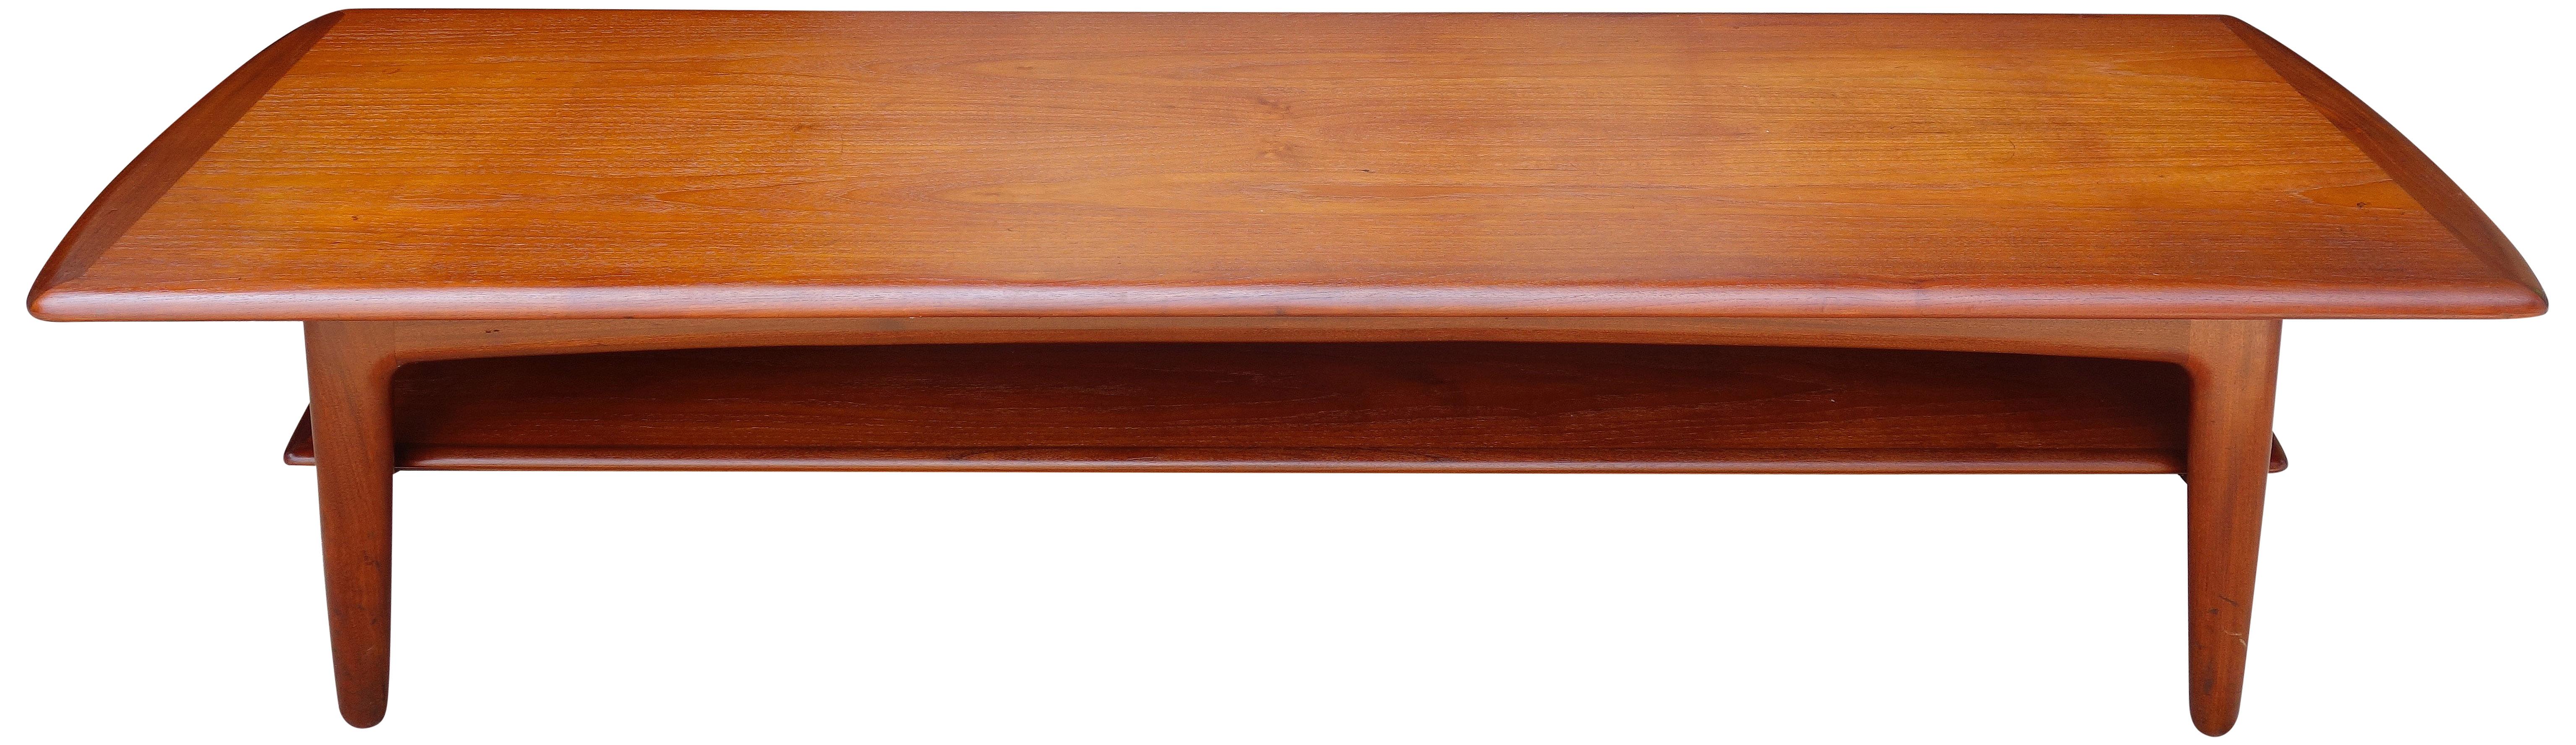 Pour votre considération est cette belle table basse en teck s'étendant 71''. Conçu par Svend Aage Madsen pour Karl Lindegaard. En merveilleux état d'origine avec une patine chaude et prêt à être utilisé.